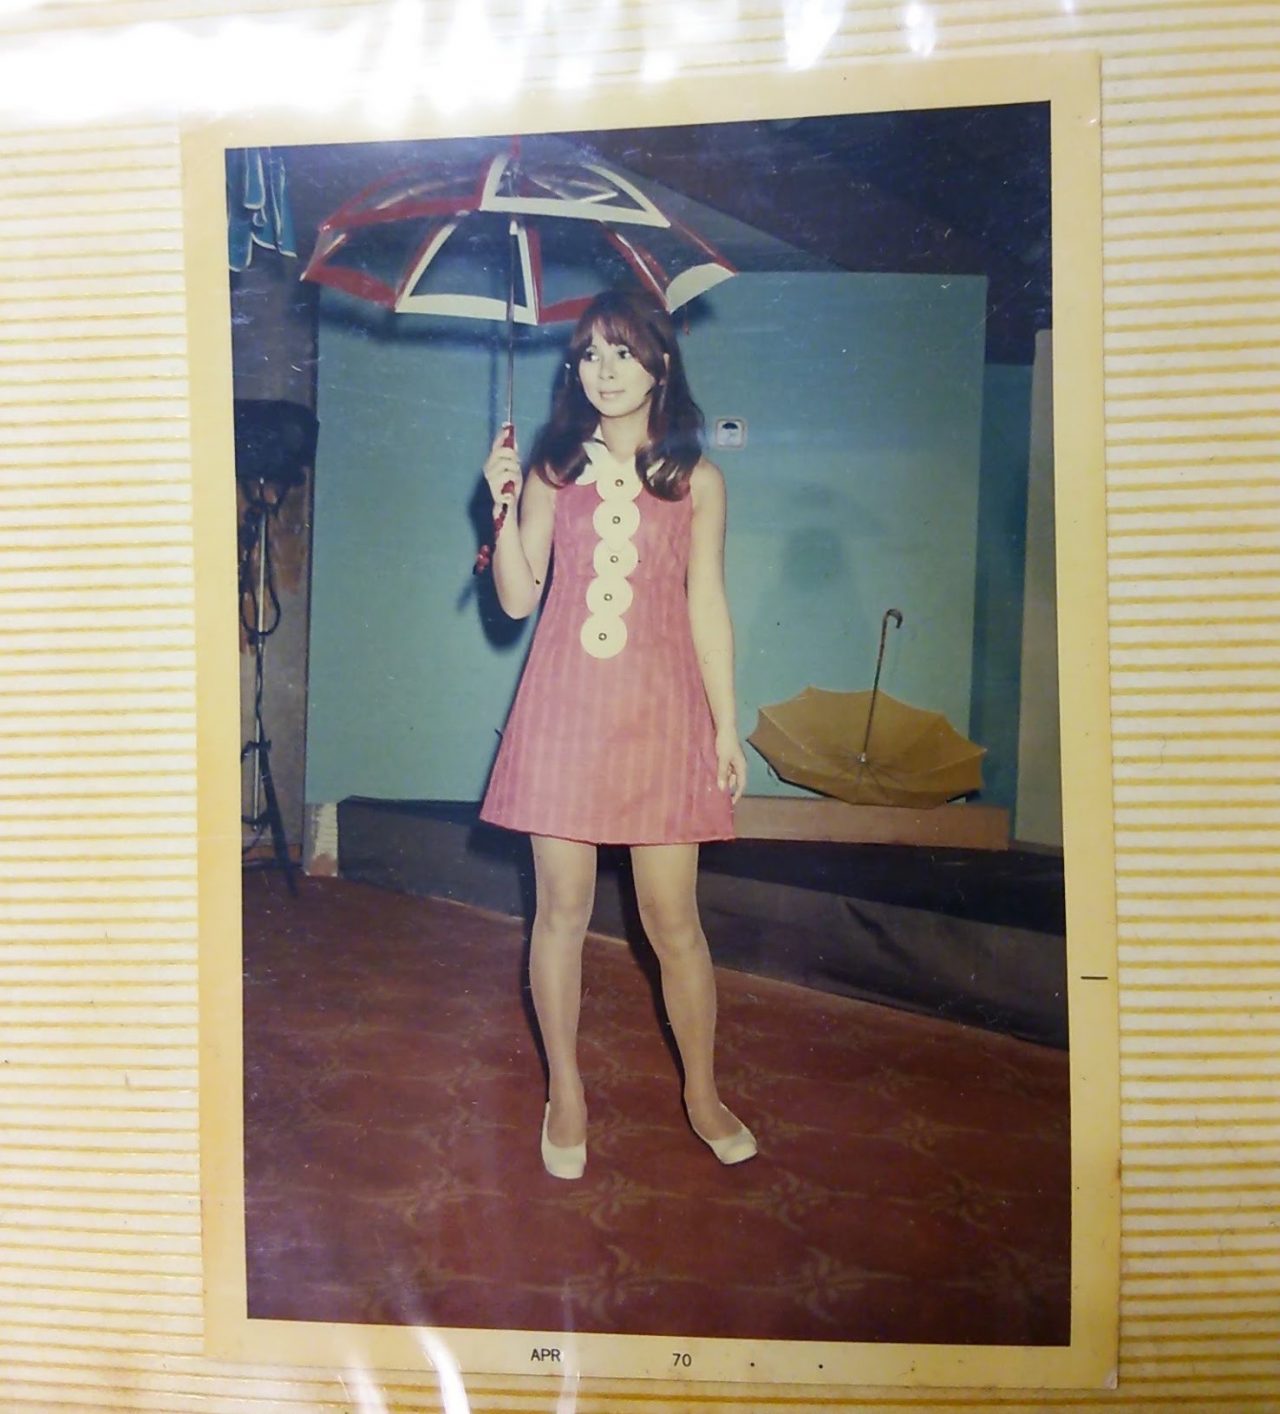 日本発祥の意外なもの 日本製のビニール傘はnyで火がついた 世界初のビニール傘を作った工房にお邪魔しました 前編 Tabizine 人生に旅心を